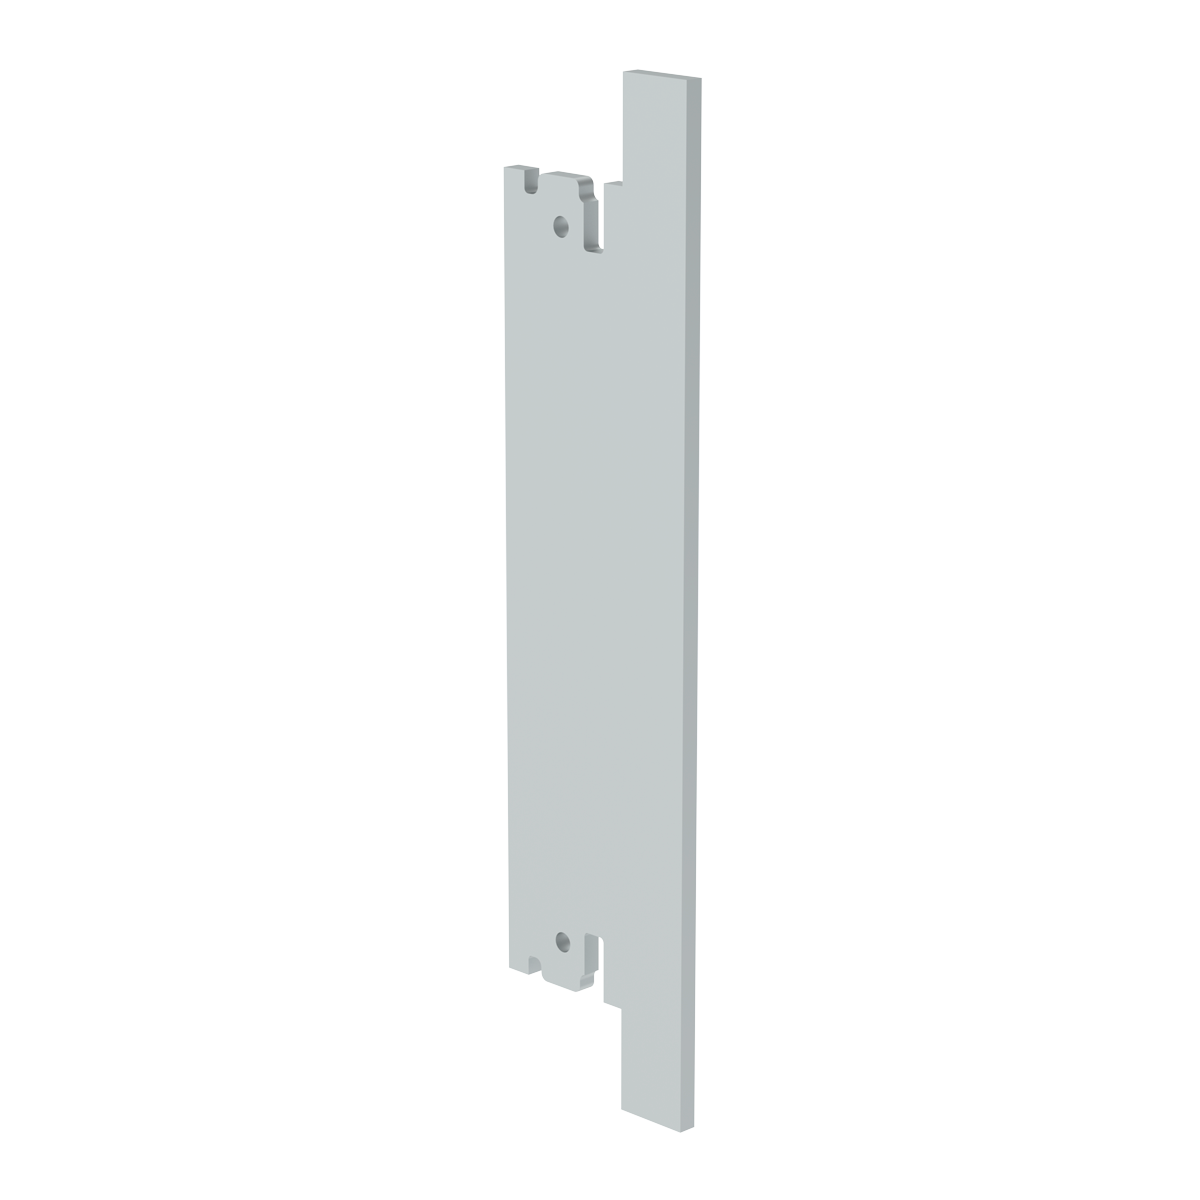 Лицевая панель 4U5HP под инжектор-экстрактор тип V-2/V-W верх/низ